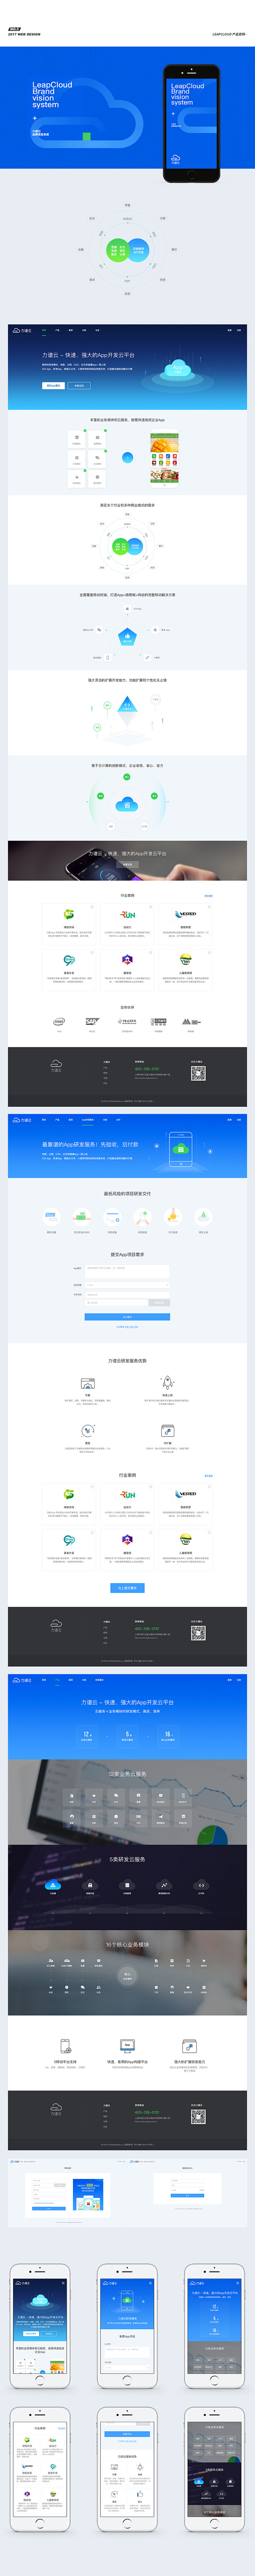 一些纯商业网页设计_王涛_68Desig...